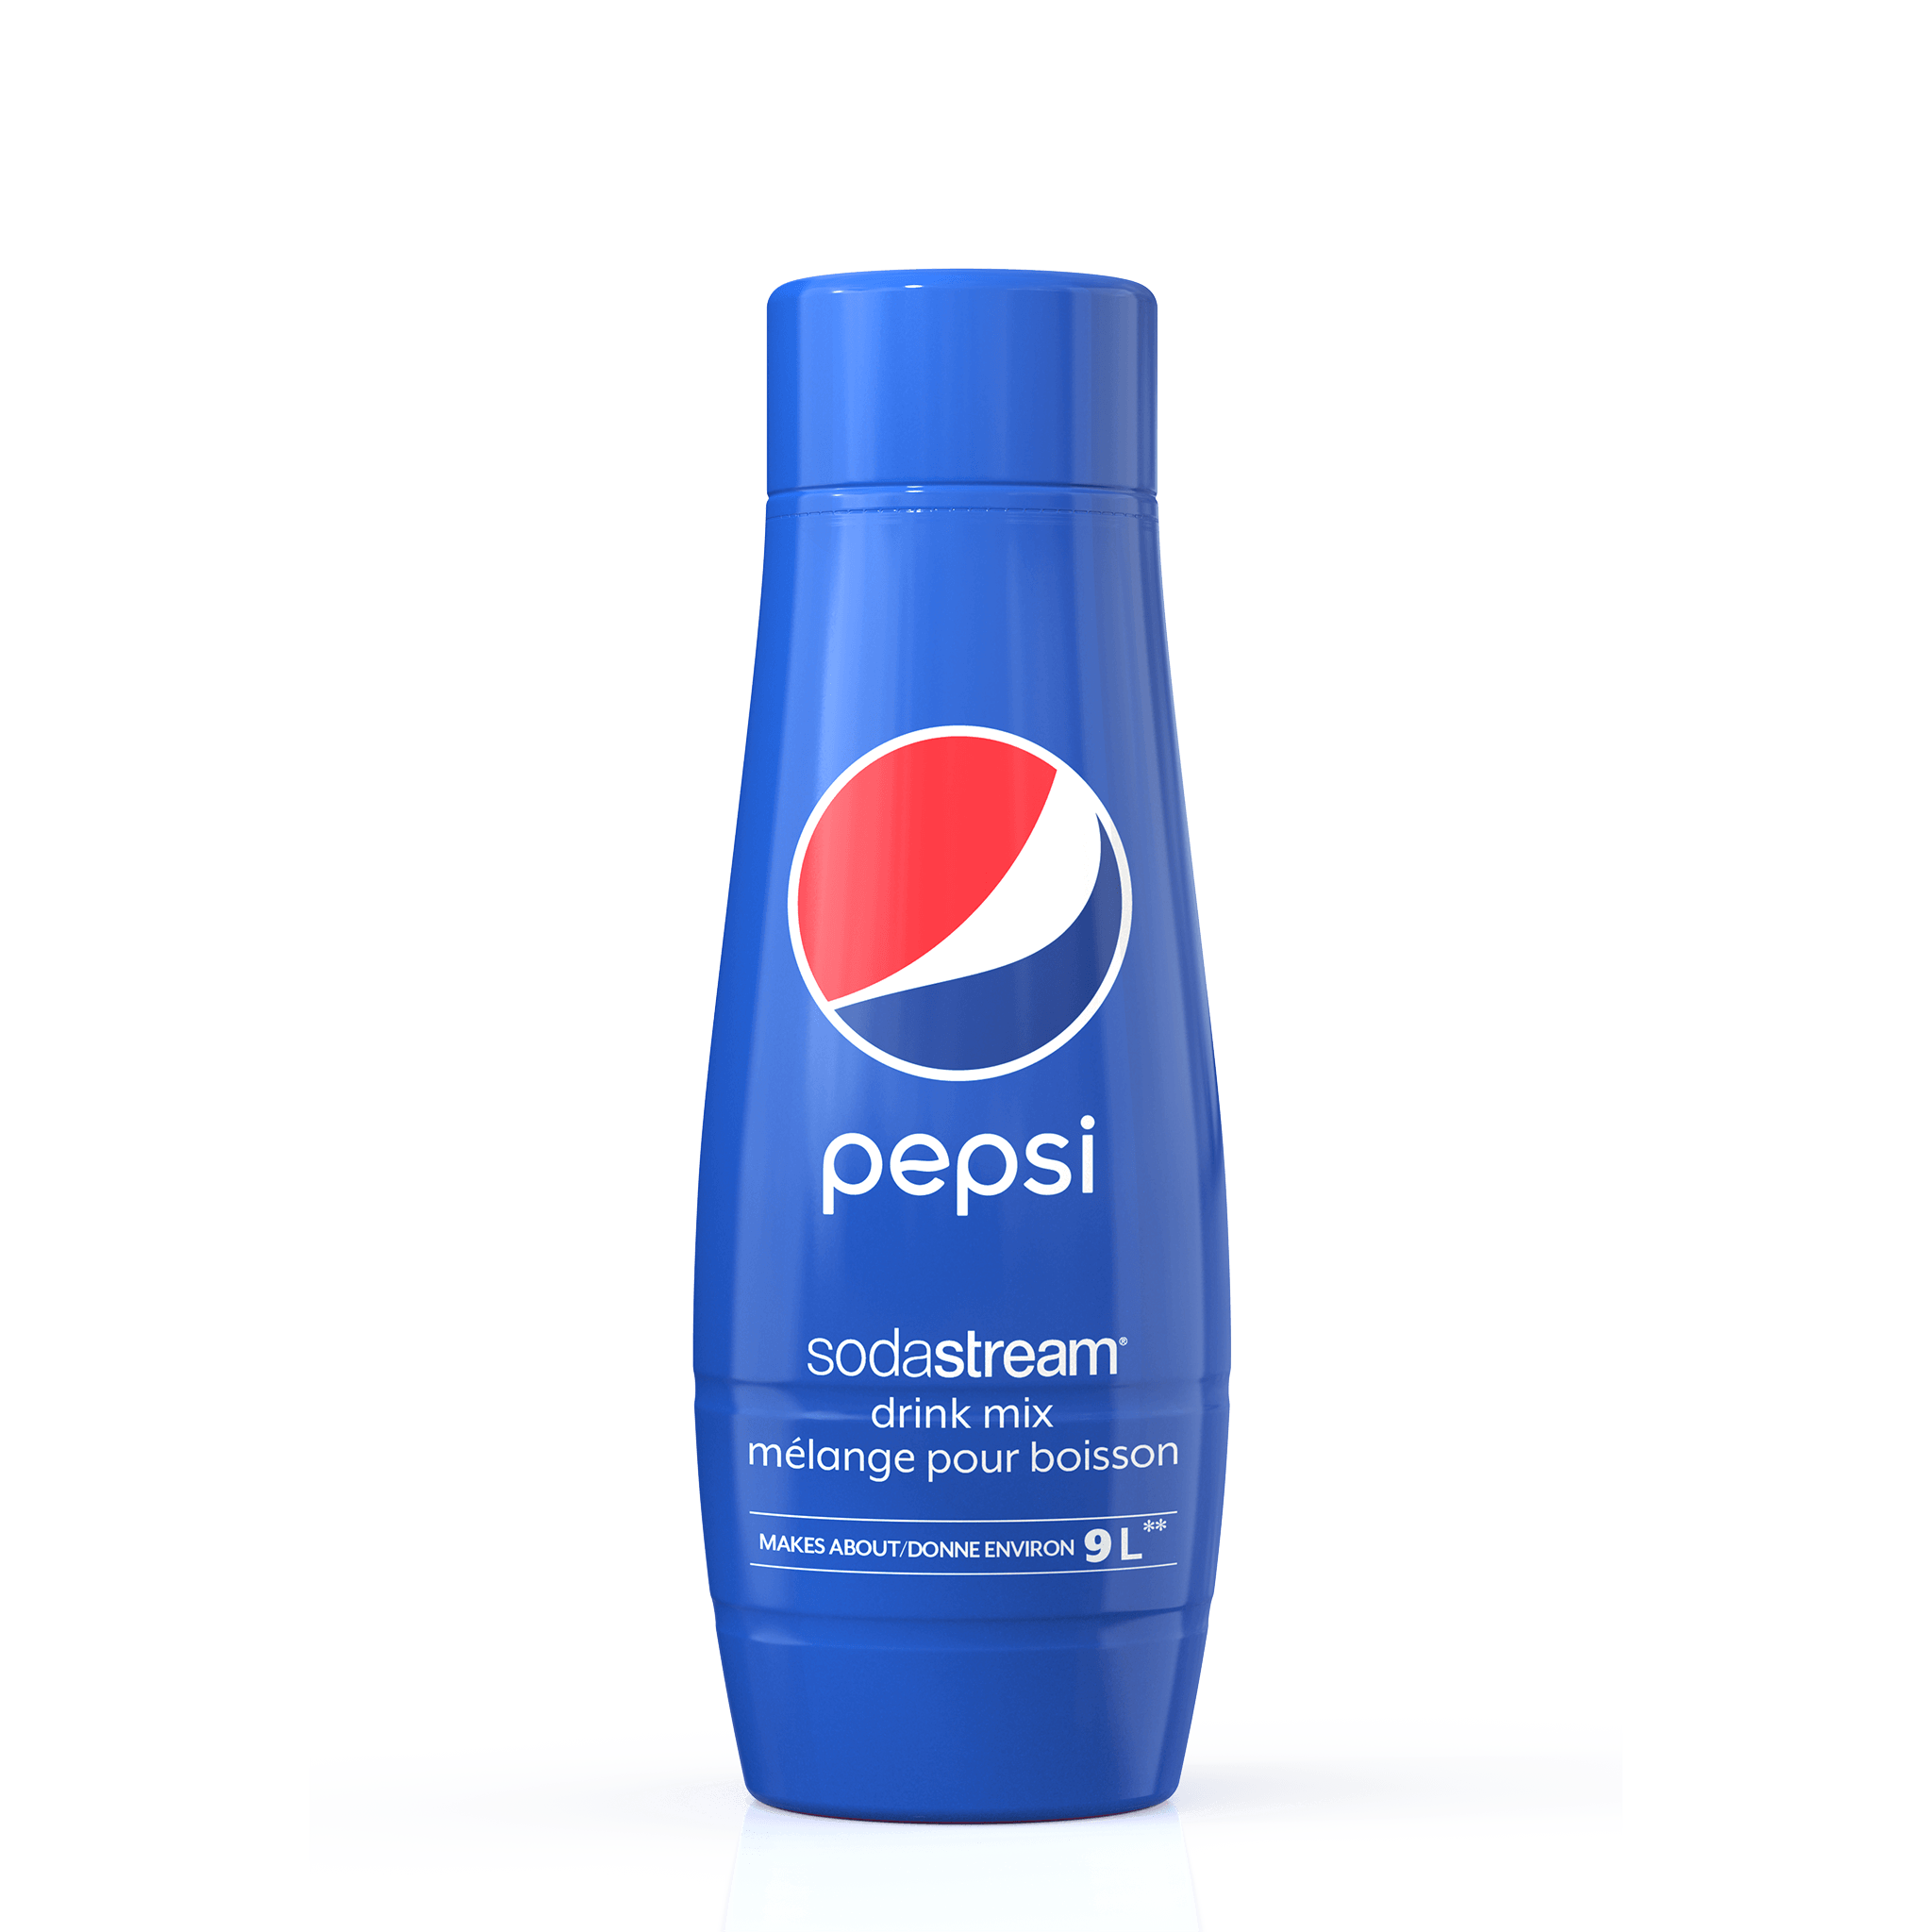 Pepsi sodastream